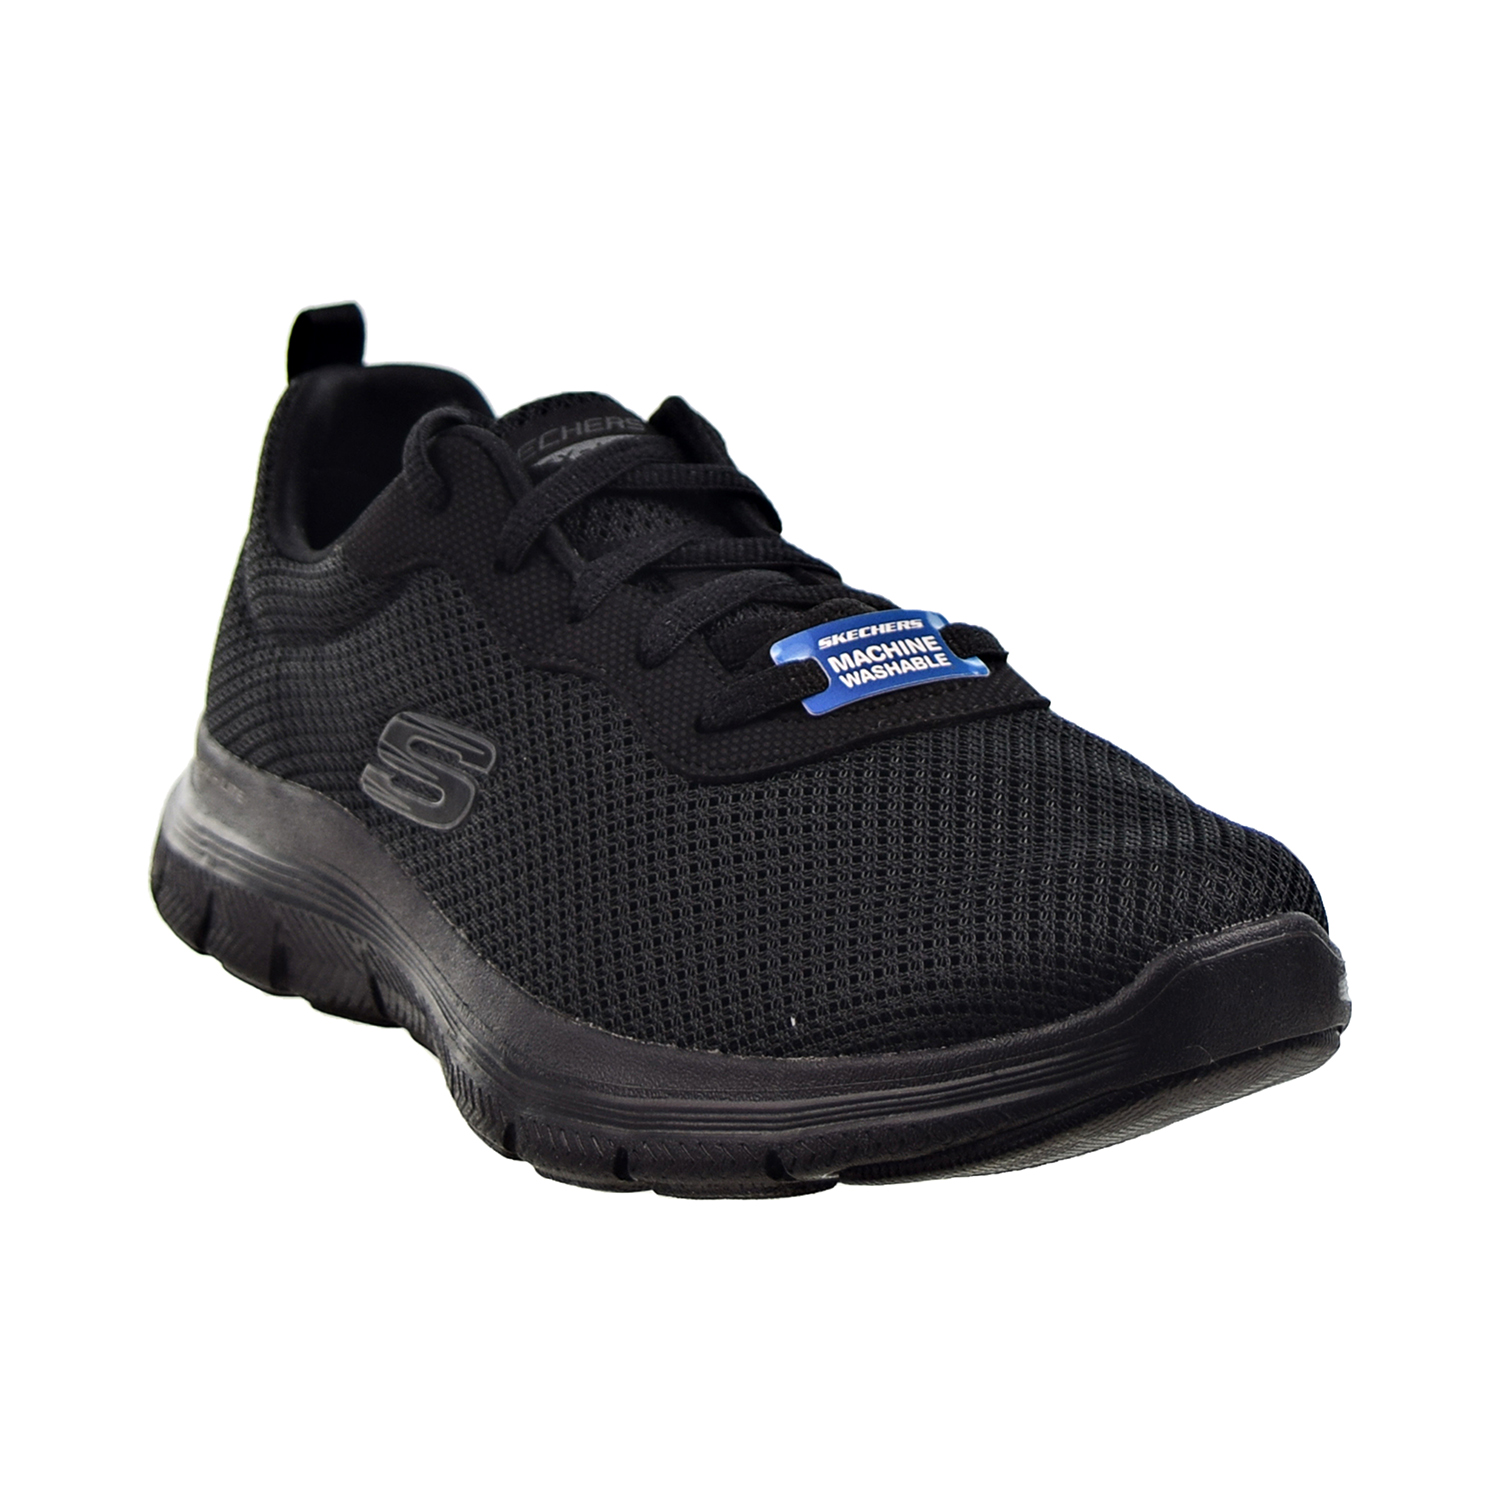 Skechers Flex Appeal 4.0 (Wide) Women's Shoes Black 149303w-bbk